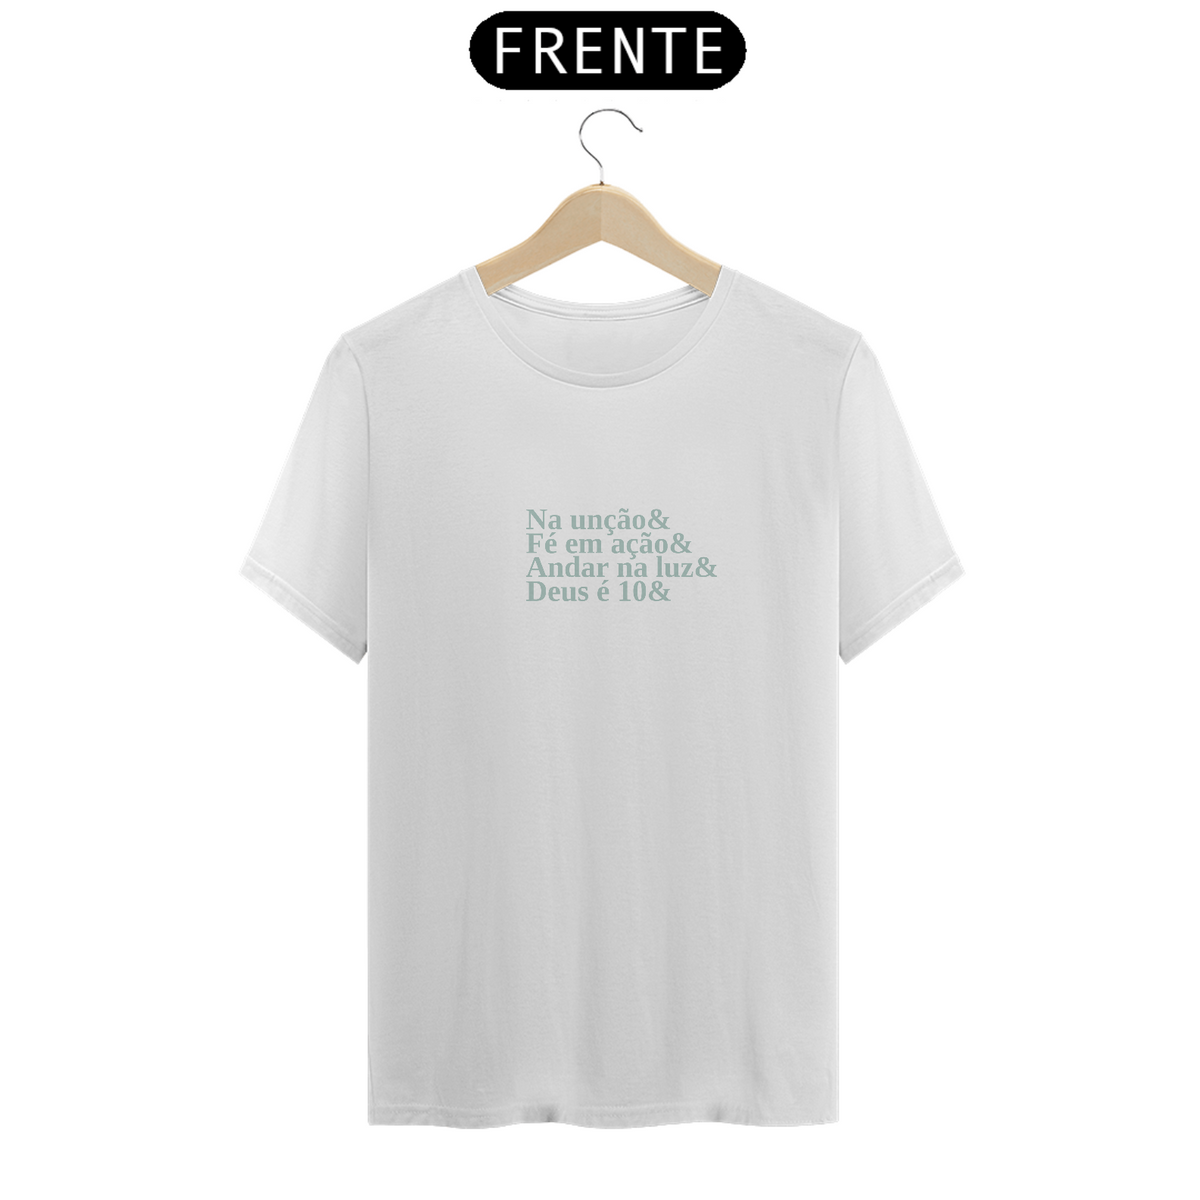 Nome do produto: Camiseta bordões da fé